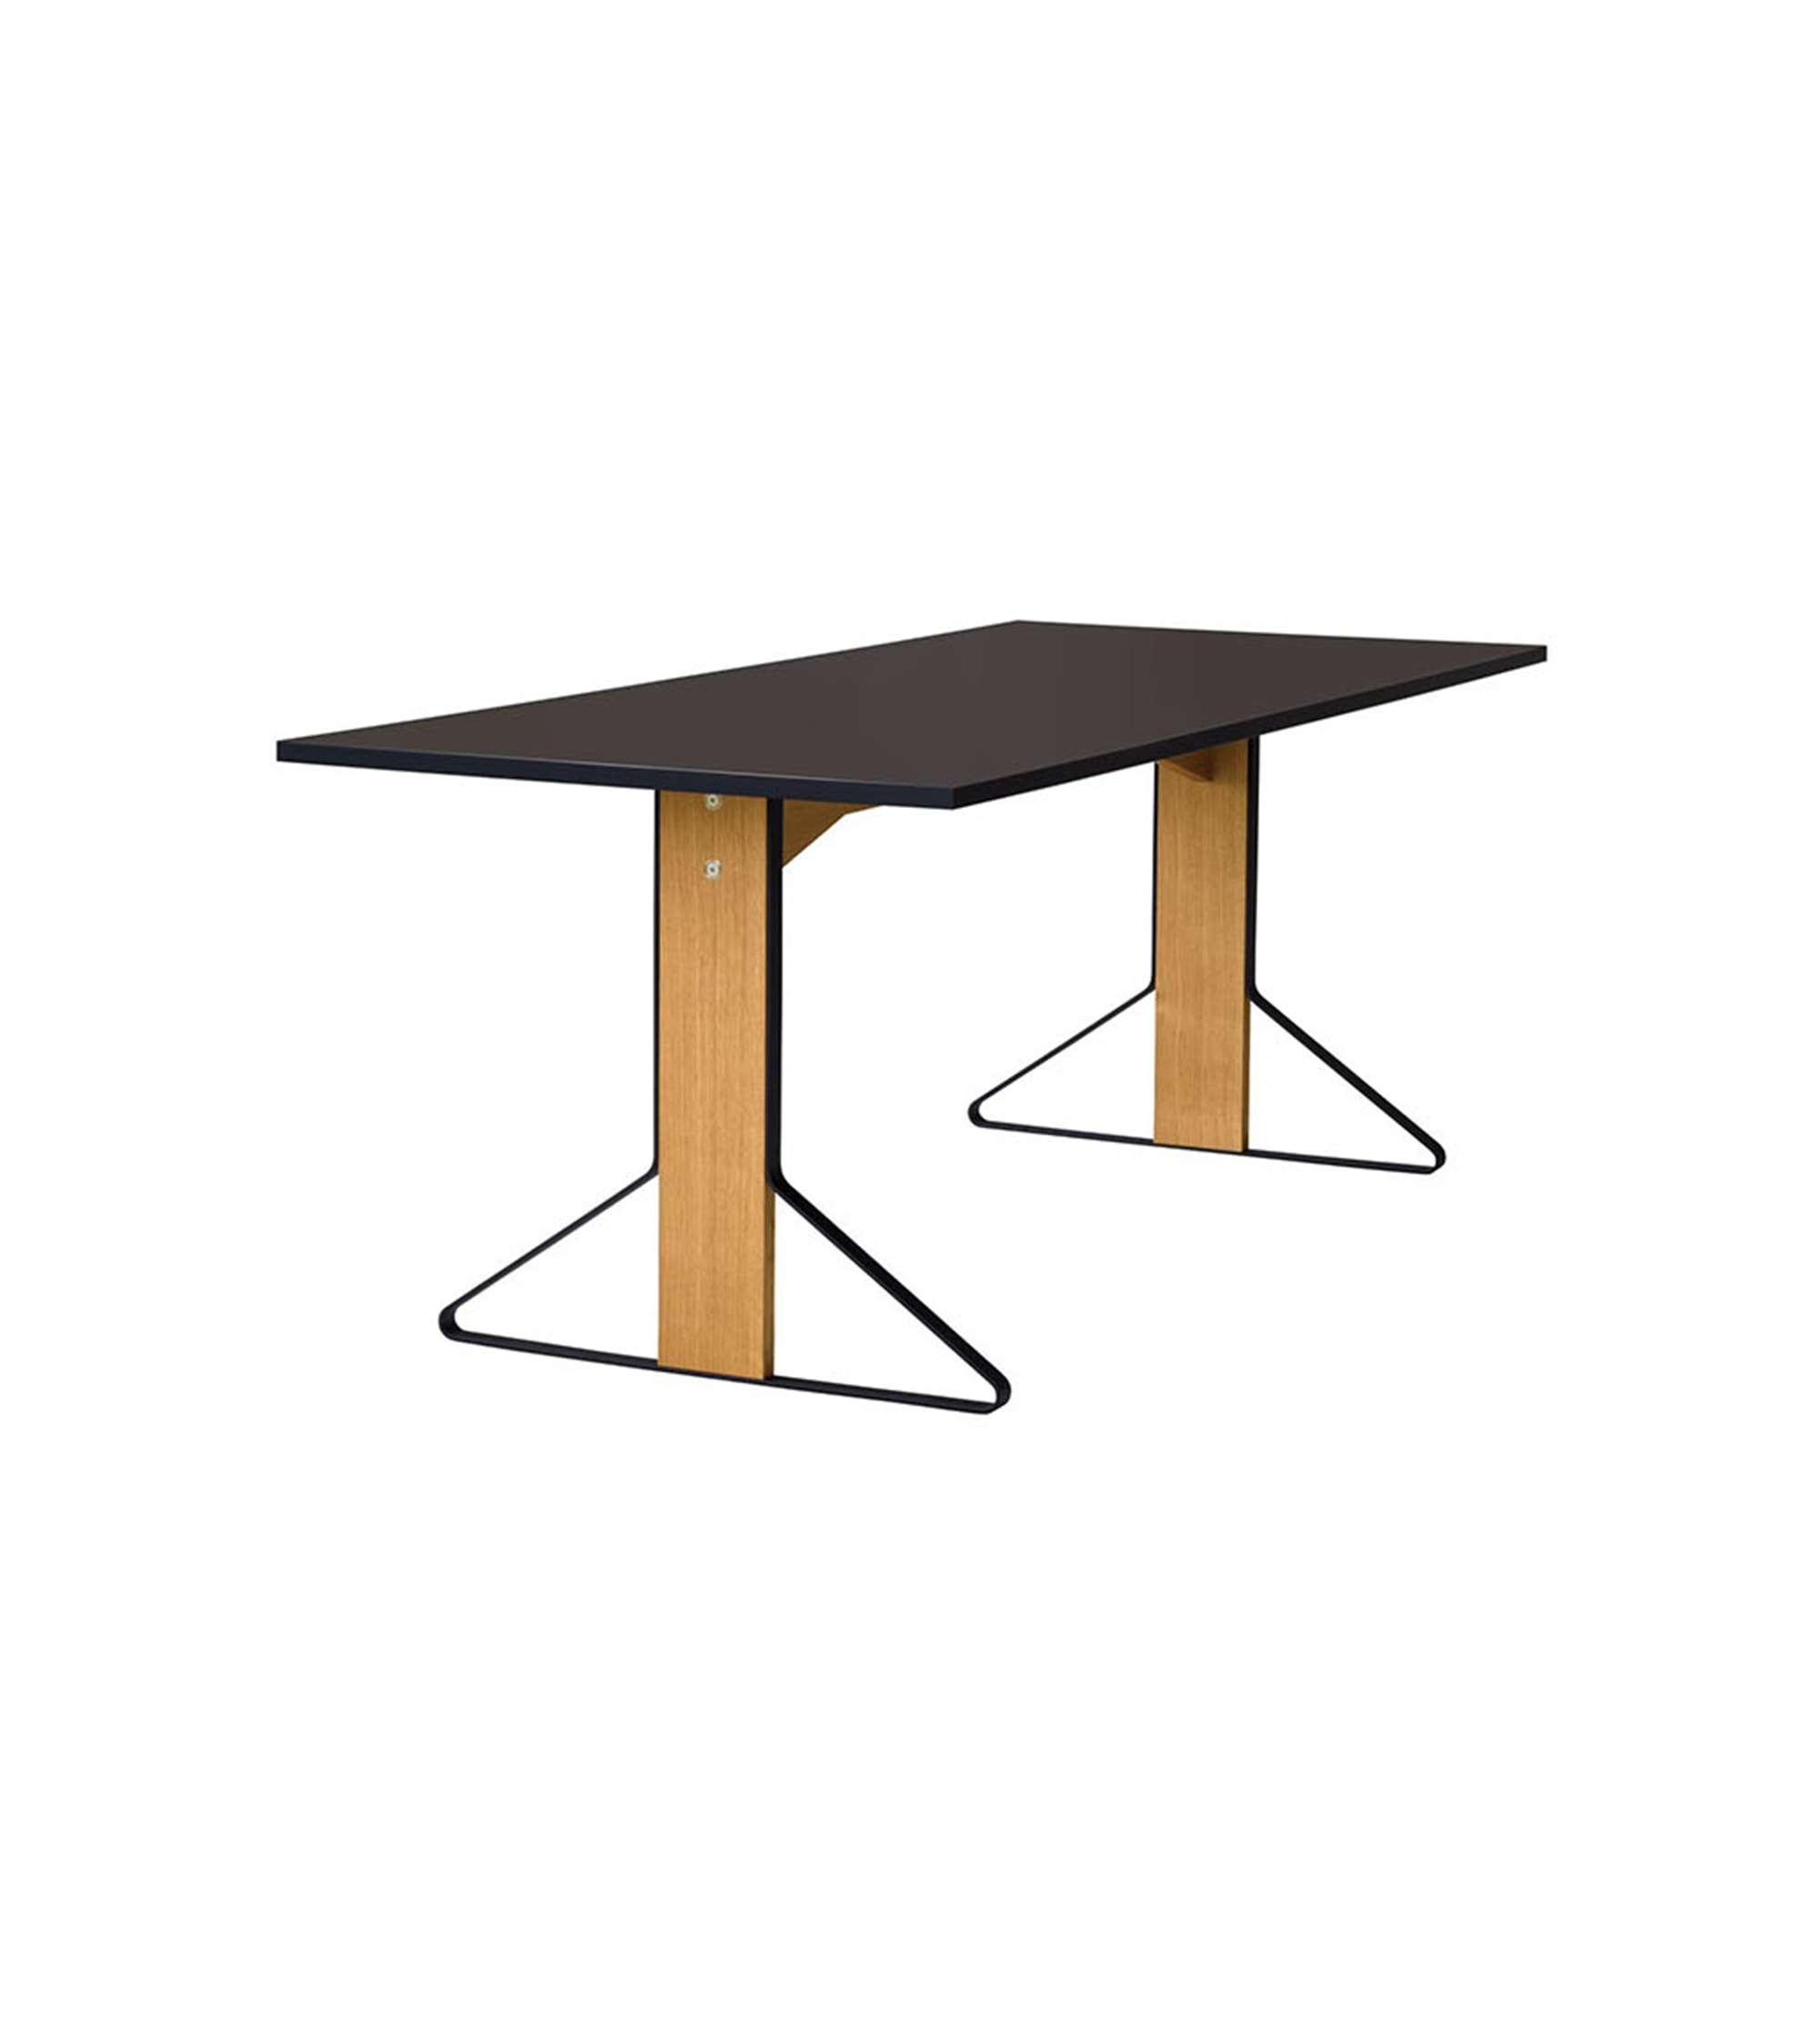 Table Kaari Artek - REB 012 - 200 x 85 cm linoleum